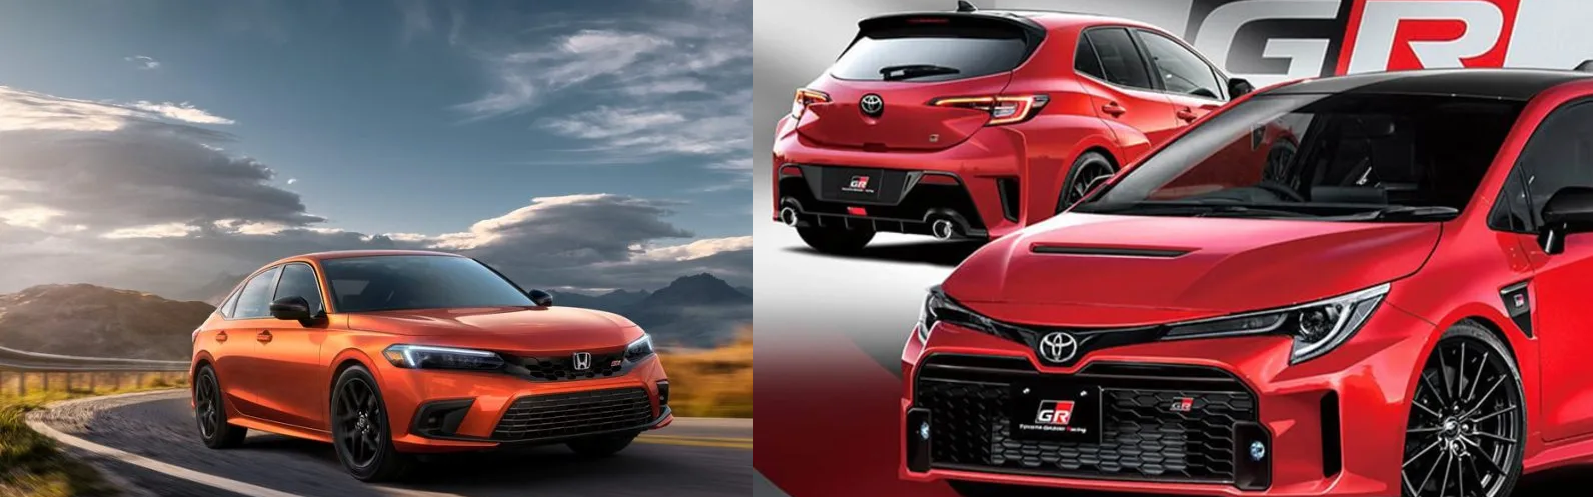 ¿Cuál hatchback es mejor entre el Honda Civic Type R y el Toyota GR Corolla?